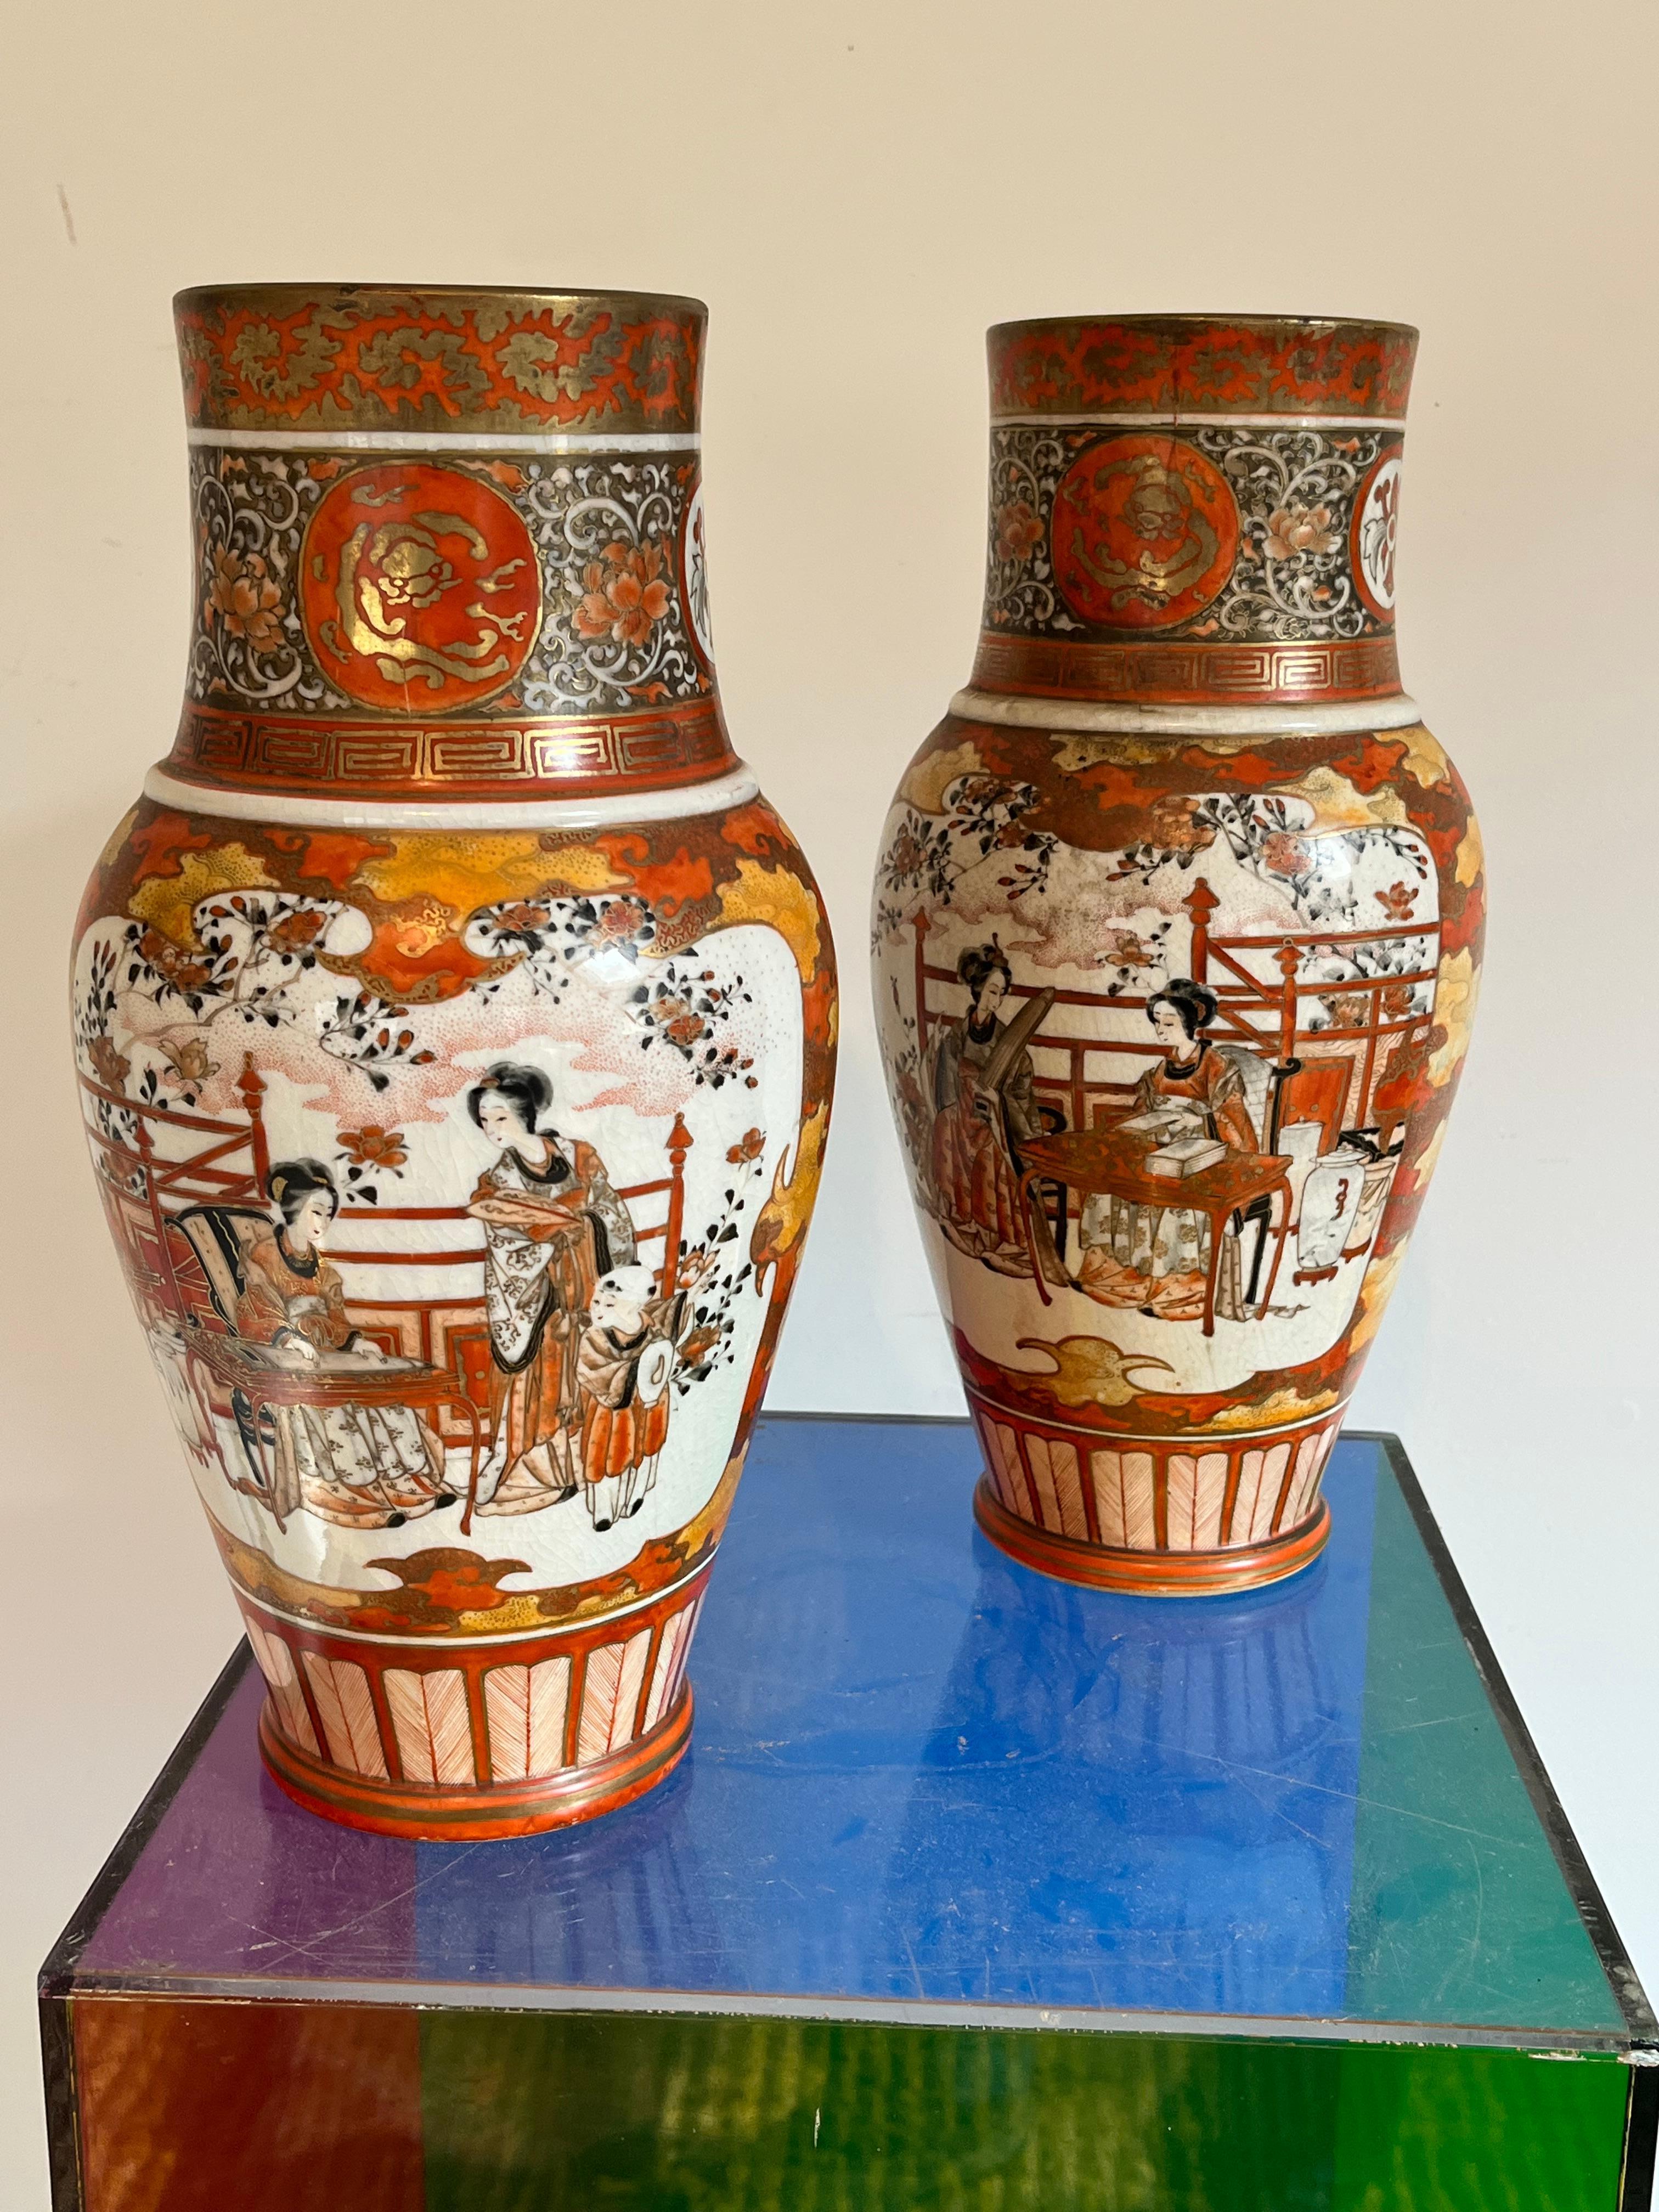 Paire de vases en porcelaine japonaise de la manière de Kutani, peints à la main avec des panneaux figuratifs représentant des femmes occupées à diverses activités, le revers avec un décor floral et d'oiseaux, des bordures rouge/orange avec des